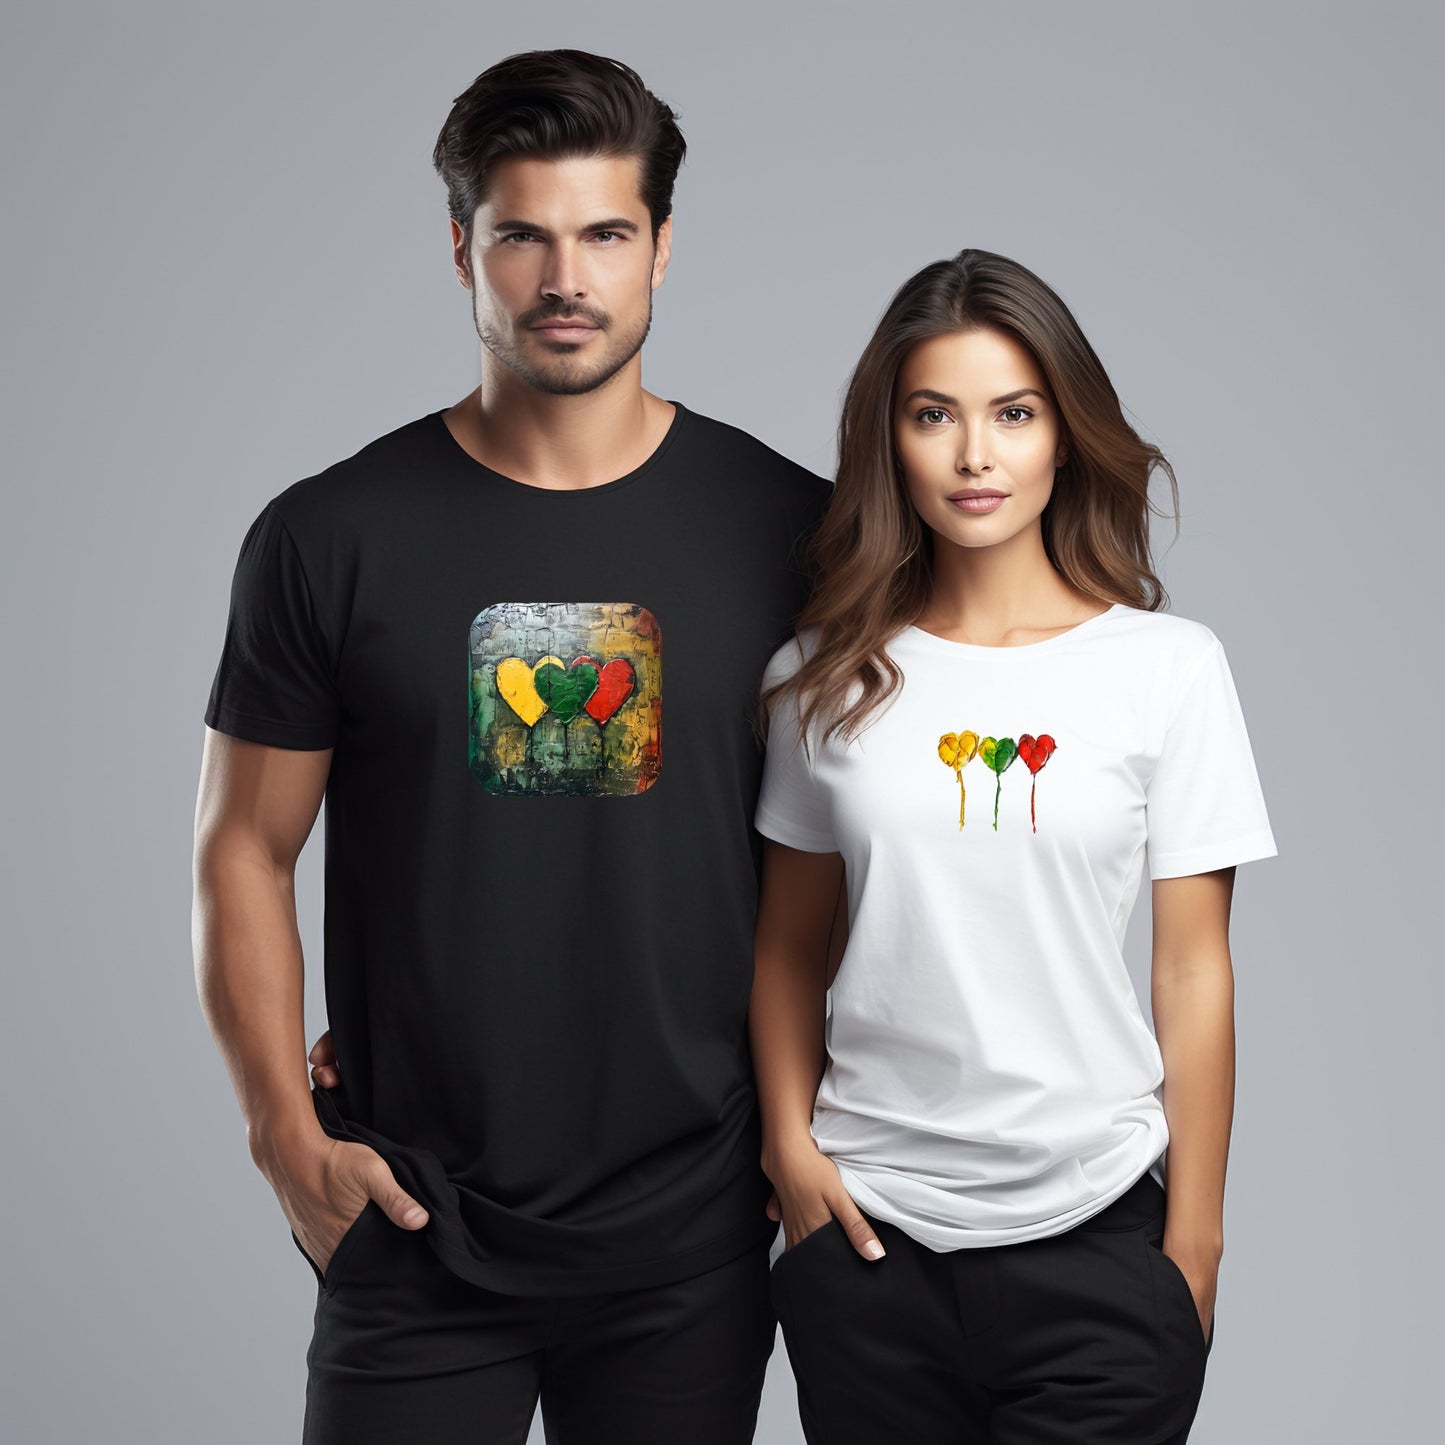 Du žmonės dėvintys „Designedbyme.lt“ marškinėlius „Freedom“, skirtingų spalvų ir originalaus dizaino, simbolizuojančius laisvės dvasią, Vyriški marškinėliai, Moteriški marškinėliai, Visi produktai